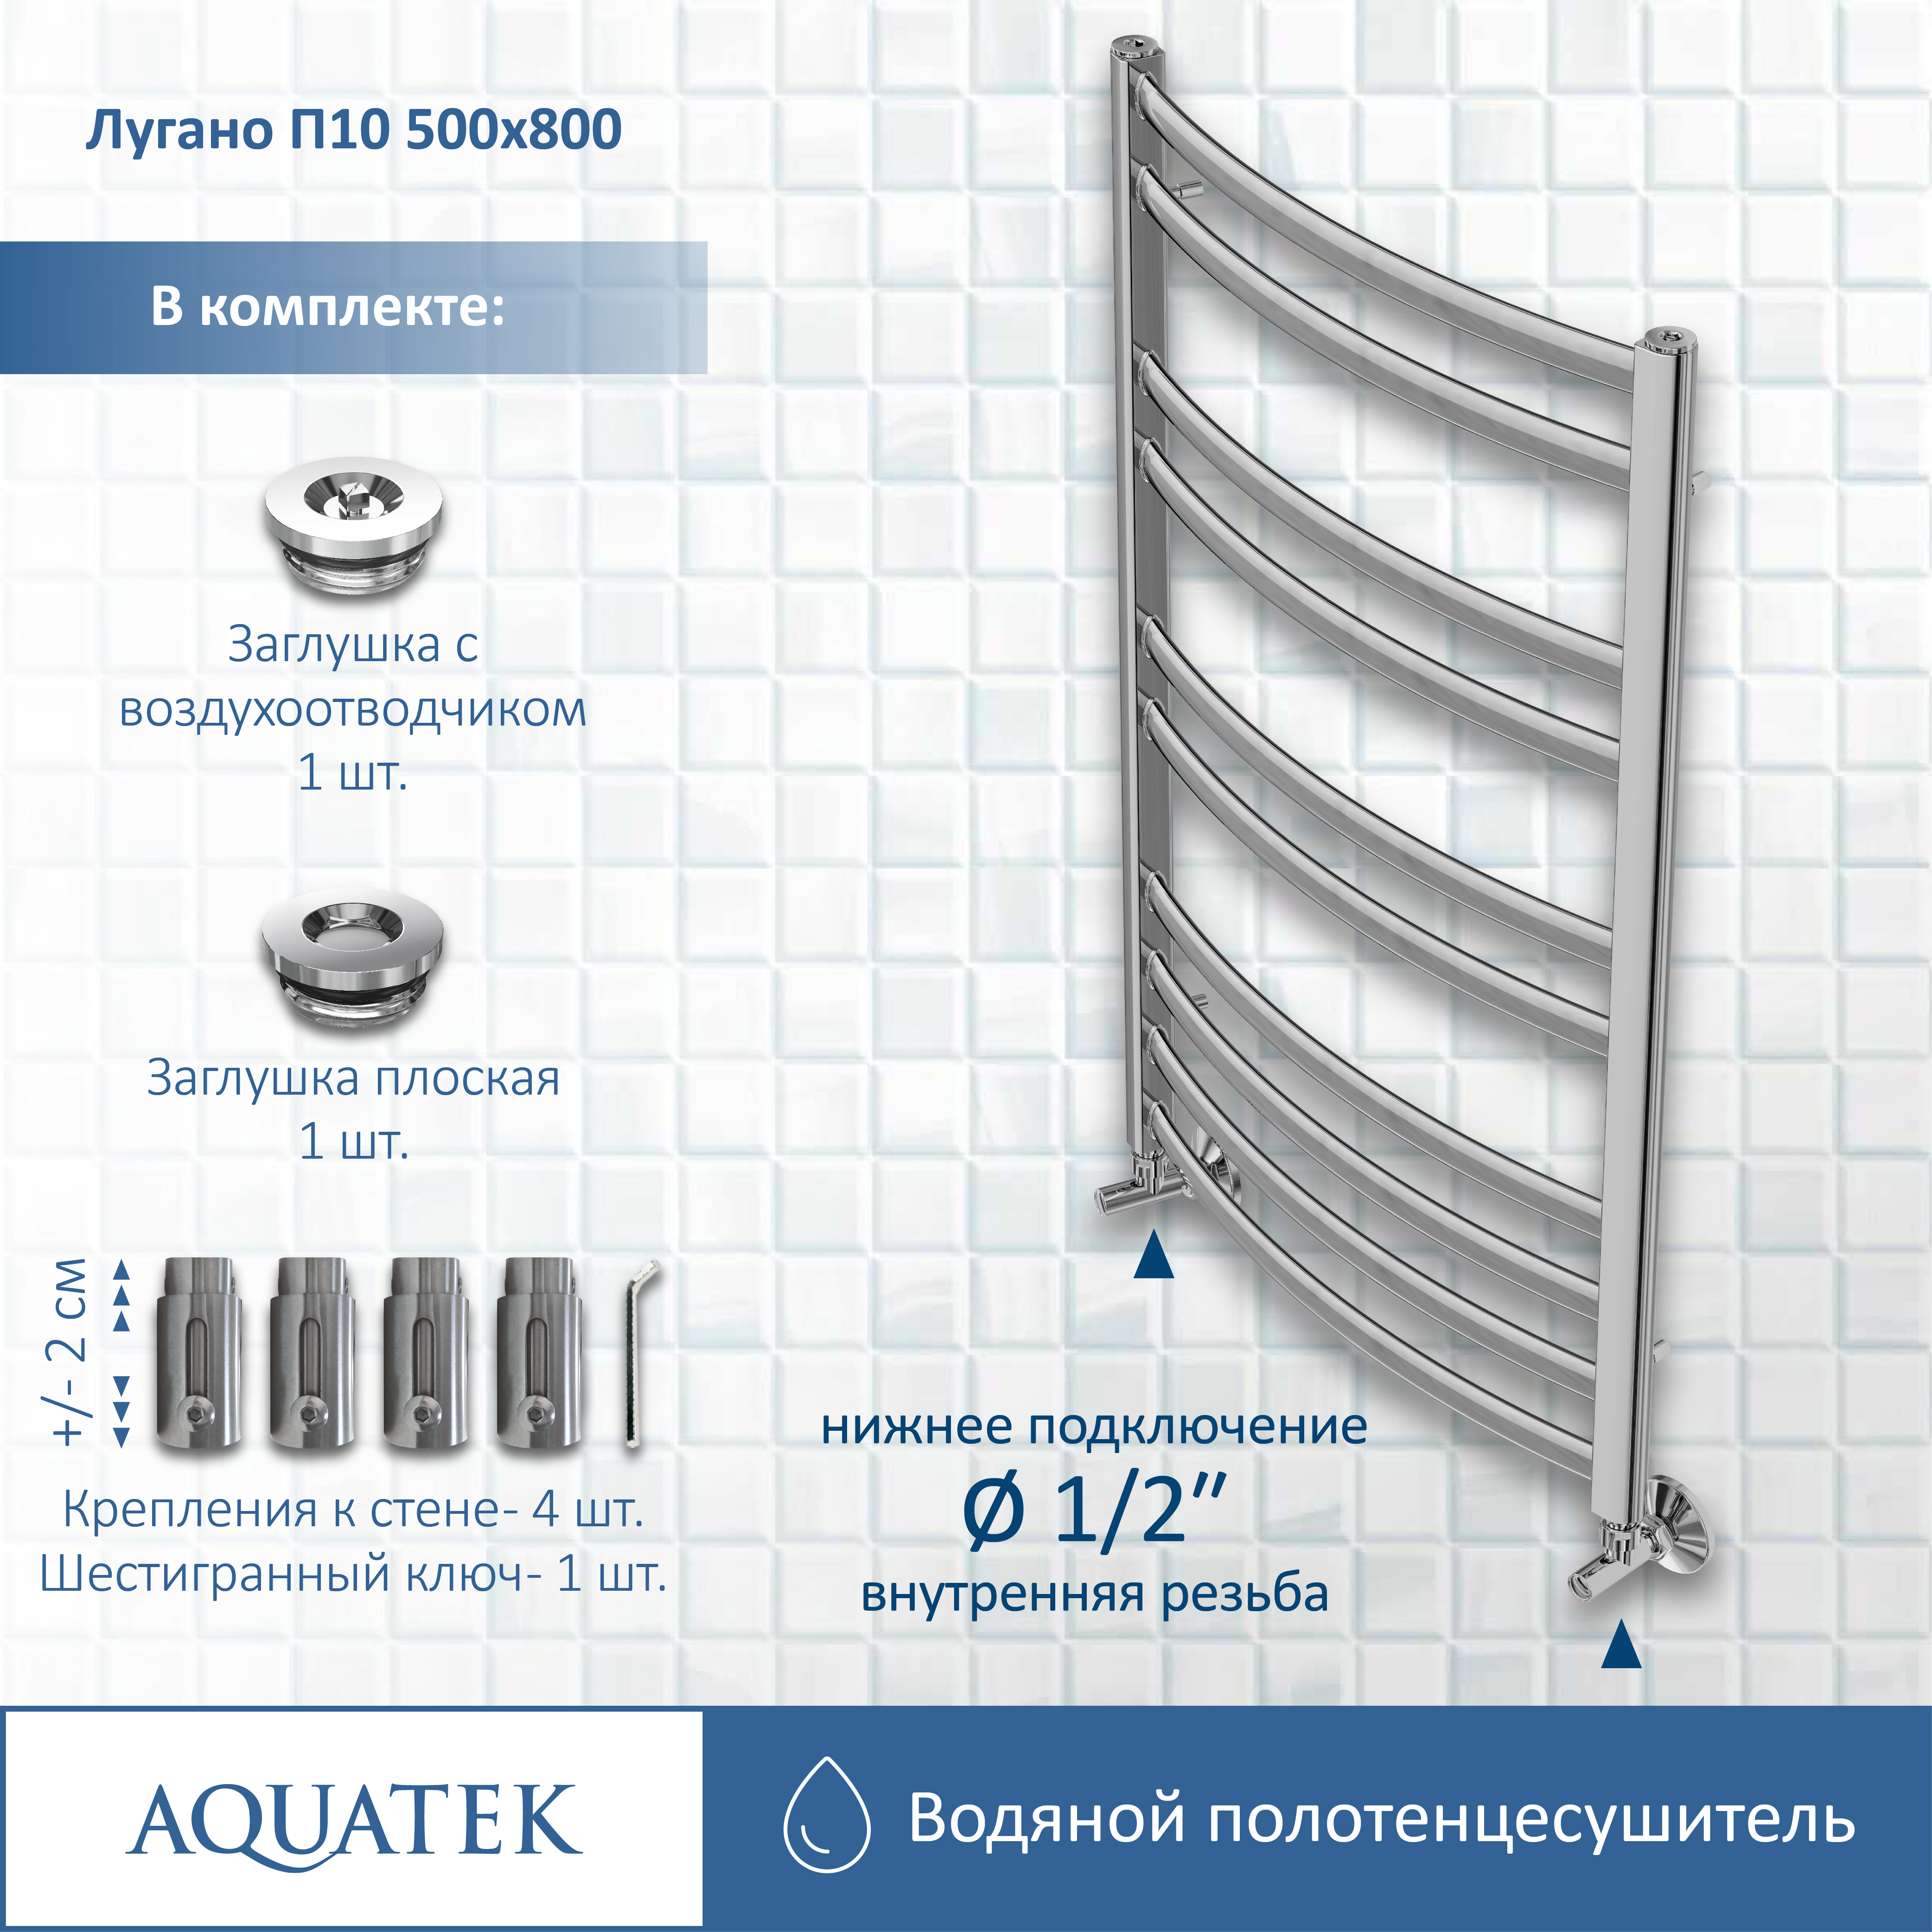 Полотенцесушитель водяной Aquatek Лугано П10 500х800 AQ DOC1080CH - 12